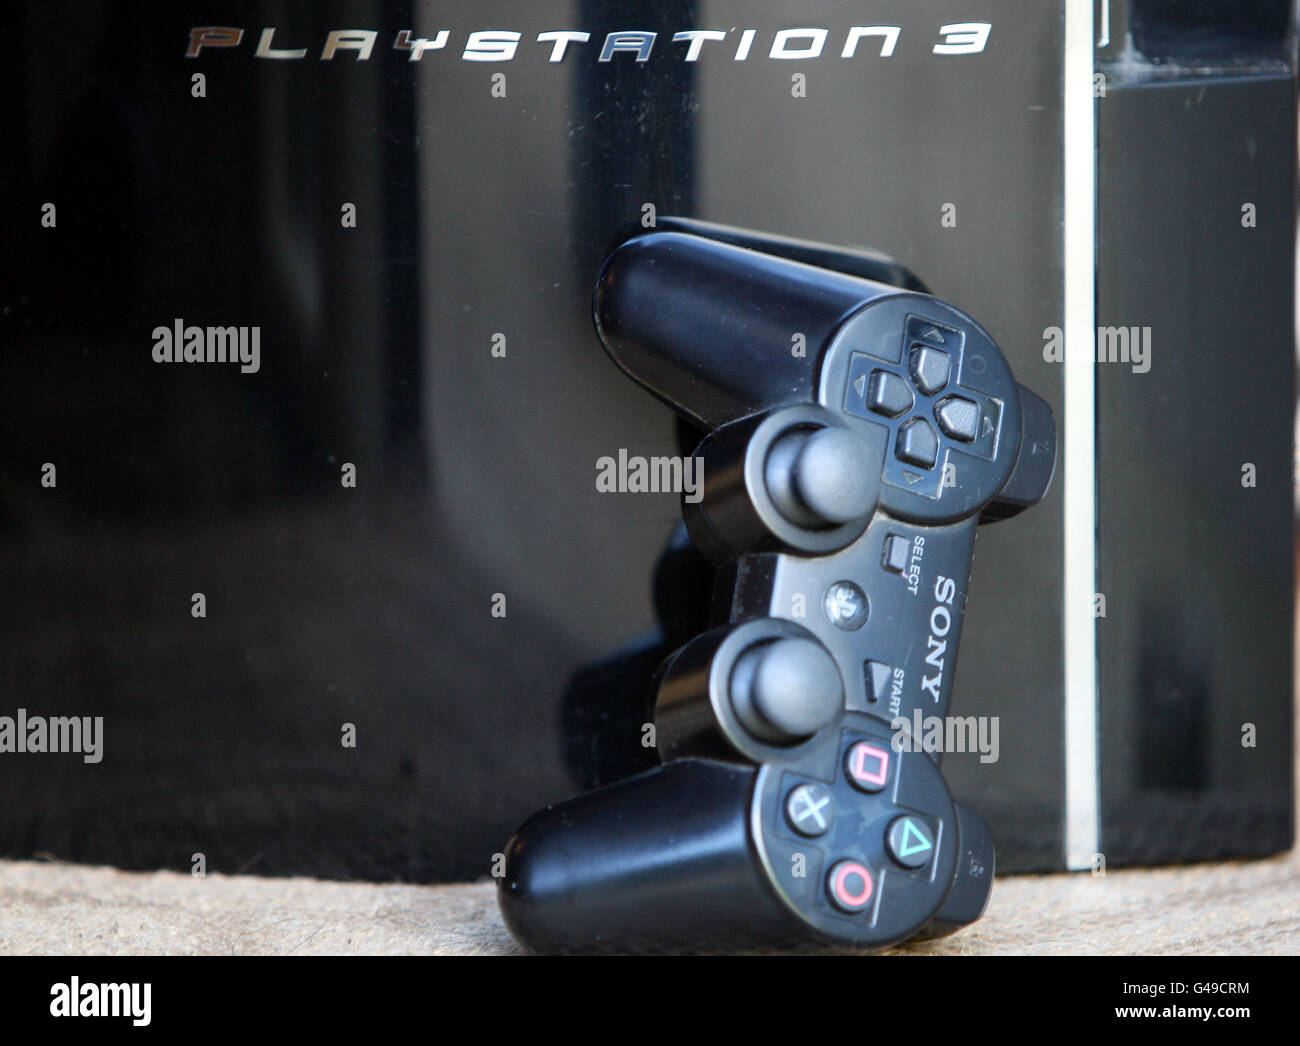 Eine PlayStation 3-Spielekonsole in einem Haus in Belfast, da Millionen von  PlayStation-Benutzern gewarnt wurden, könnten ihre persönlichen Daten,  einschließlich Kreditkartendaten, gestohlen worden sein Stockfotografie -  Alamy